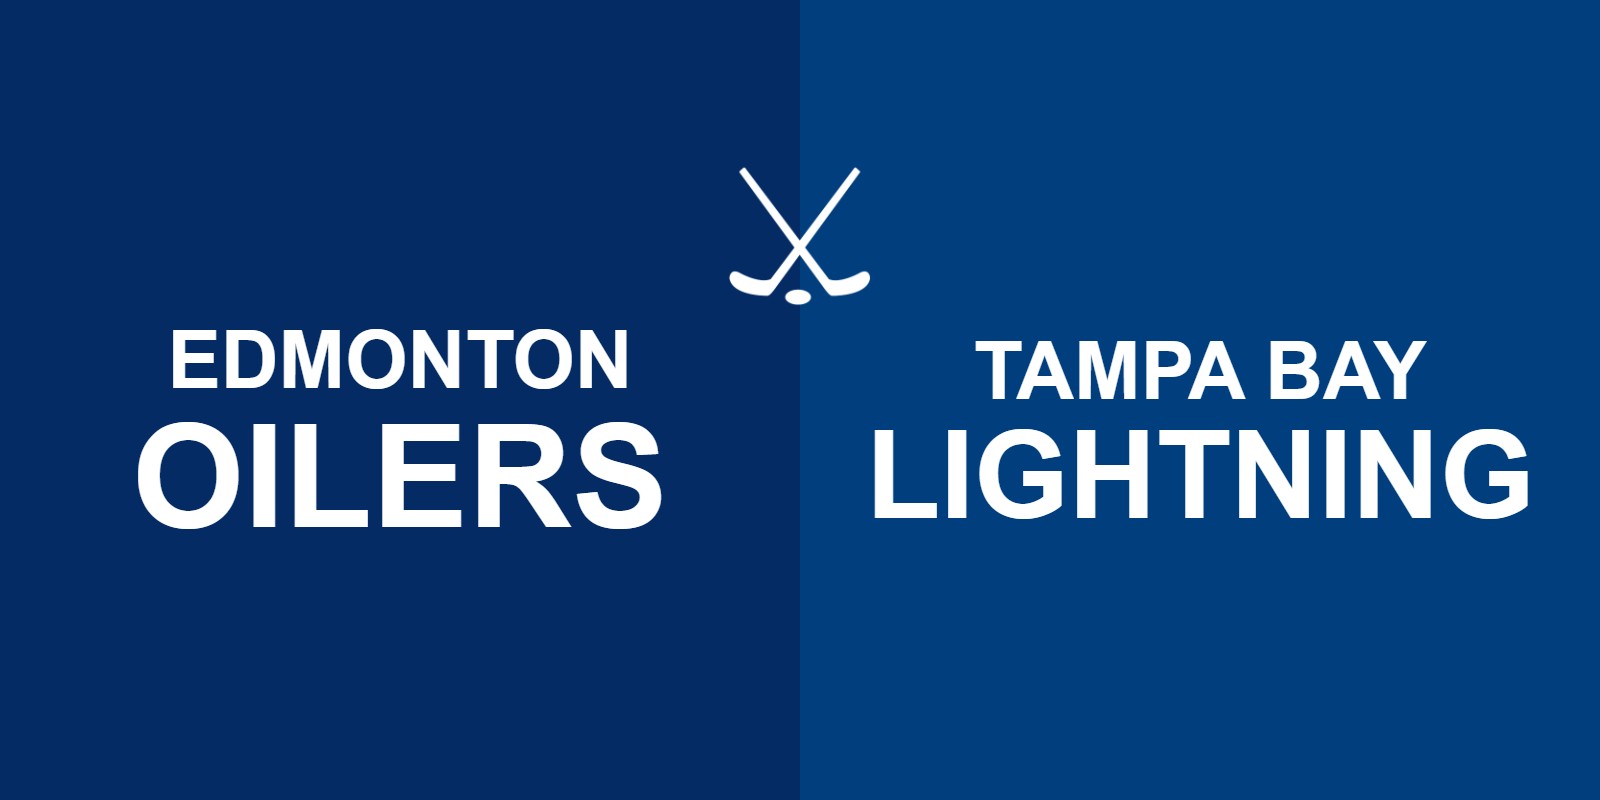 Oilers vs Lightning